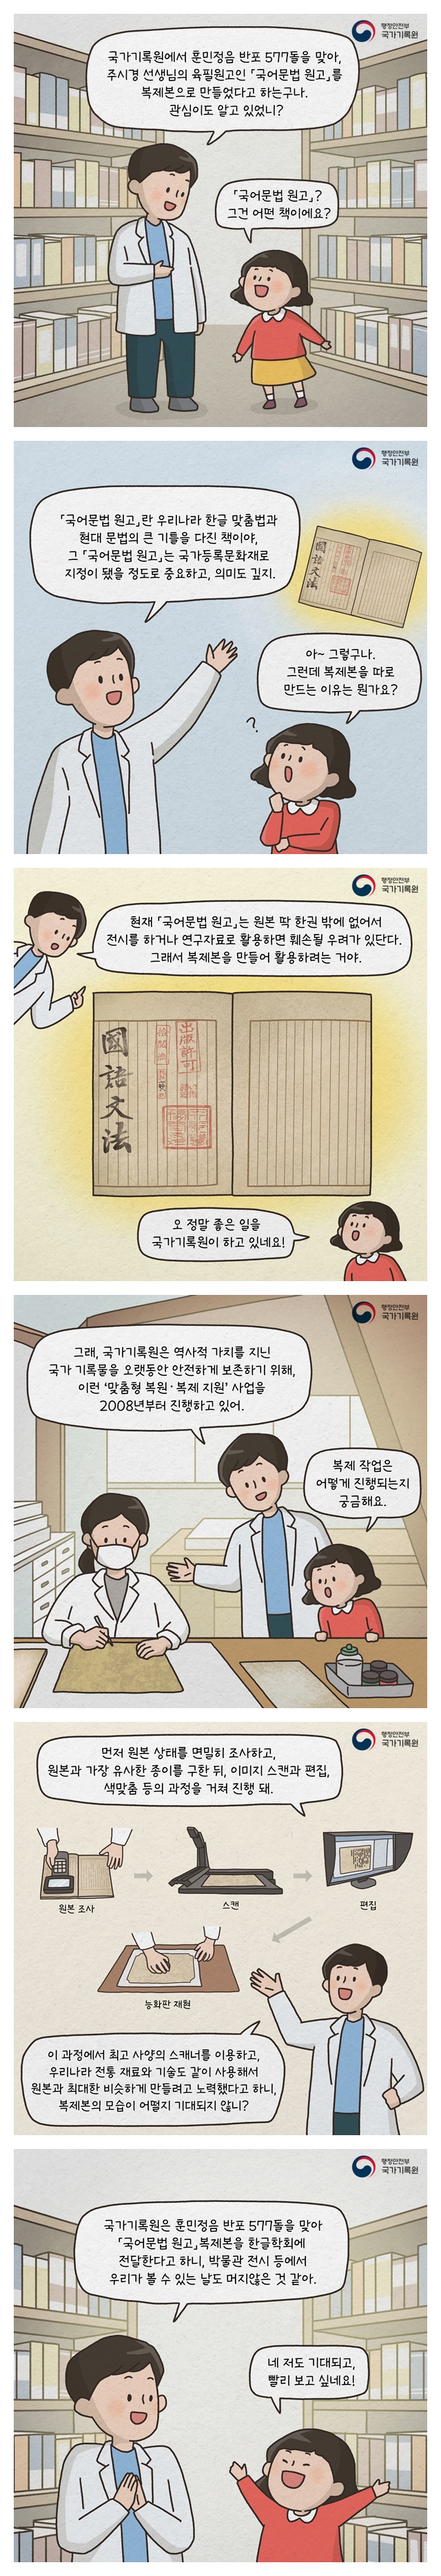 주시경 선생님의 육필원고인 「국어문법 원고」 복제본을 만들었습니다!